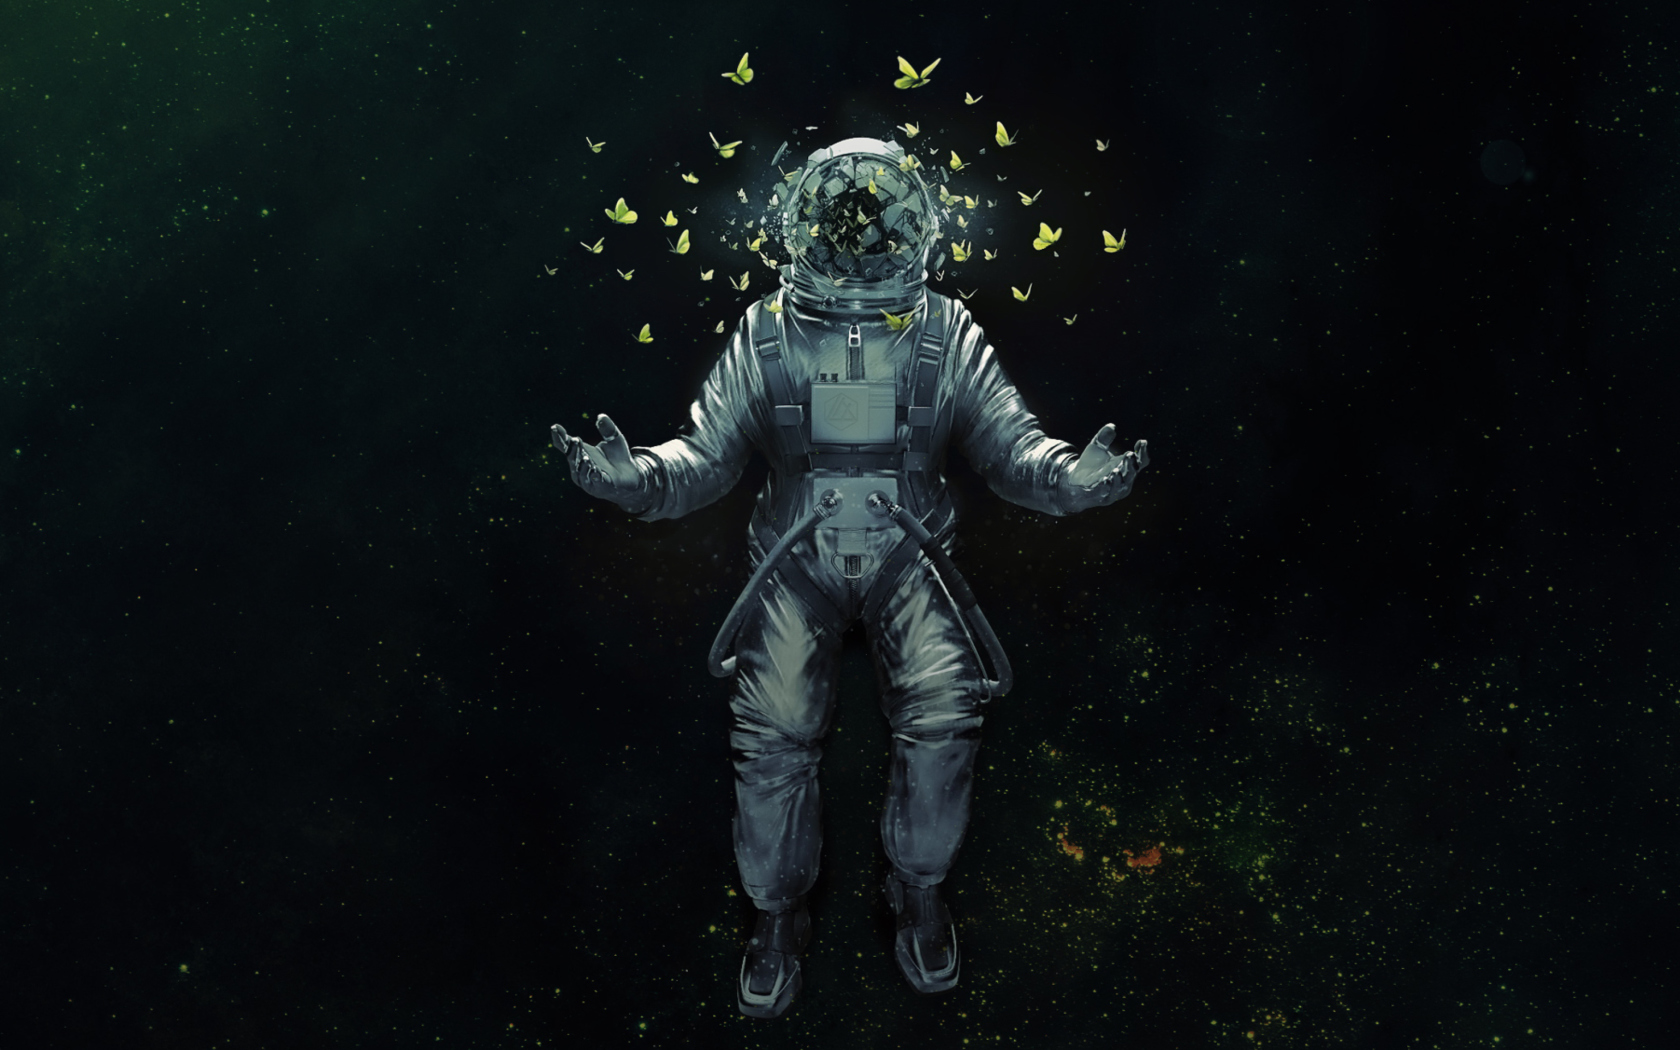 Astronaut's Dreams wallpaper 1680x1050